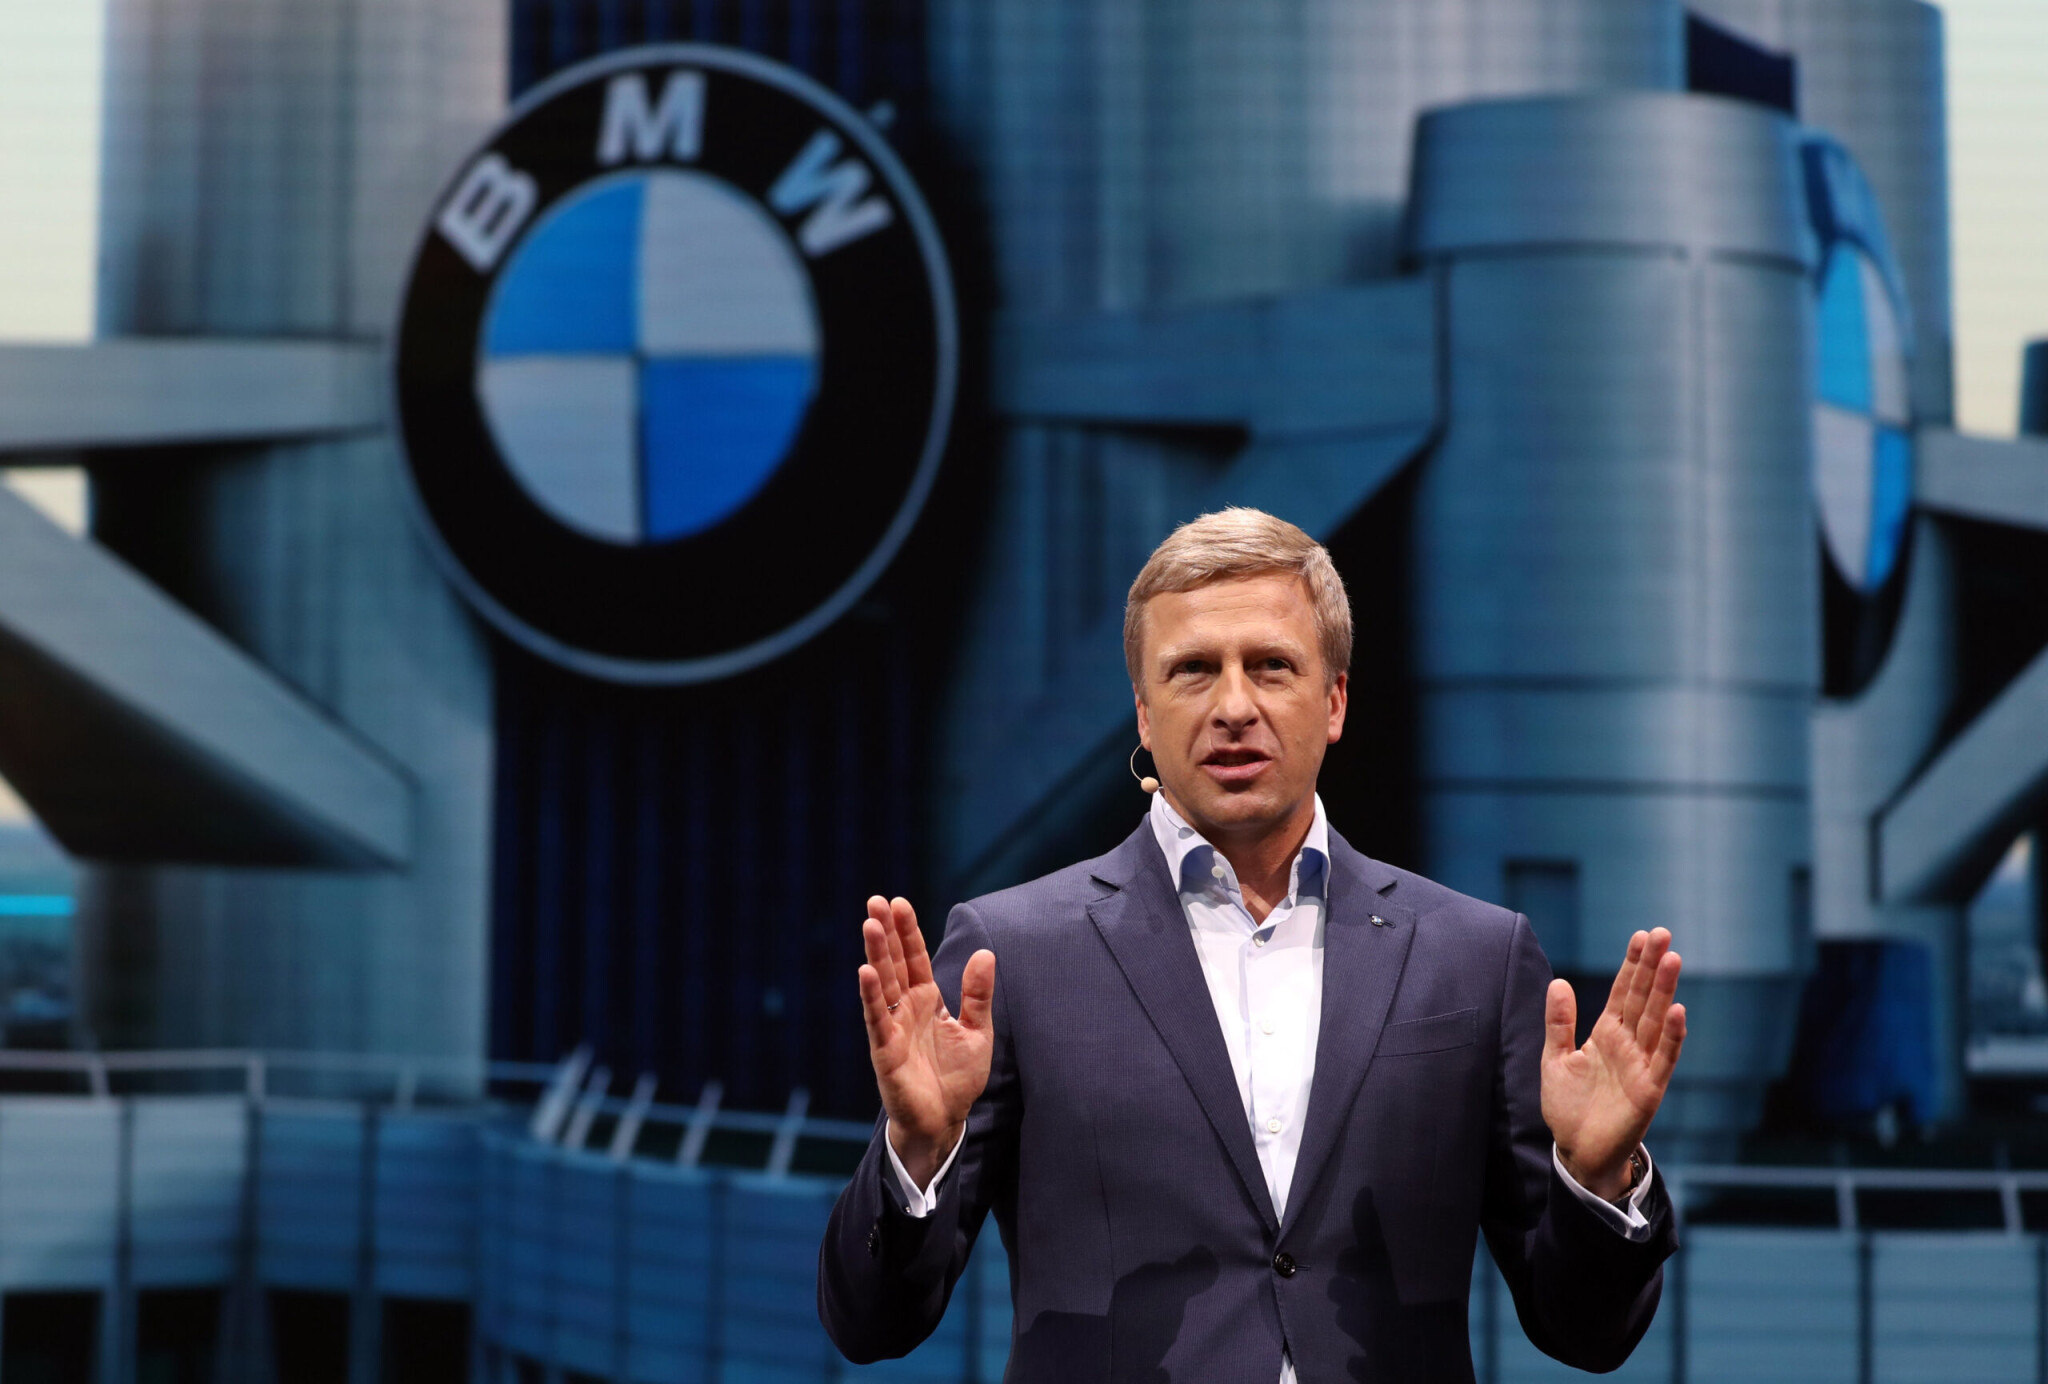 Meglesz a böjtje az esztelen átállásnak, figyelmeztet a BMW-vezér